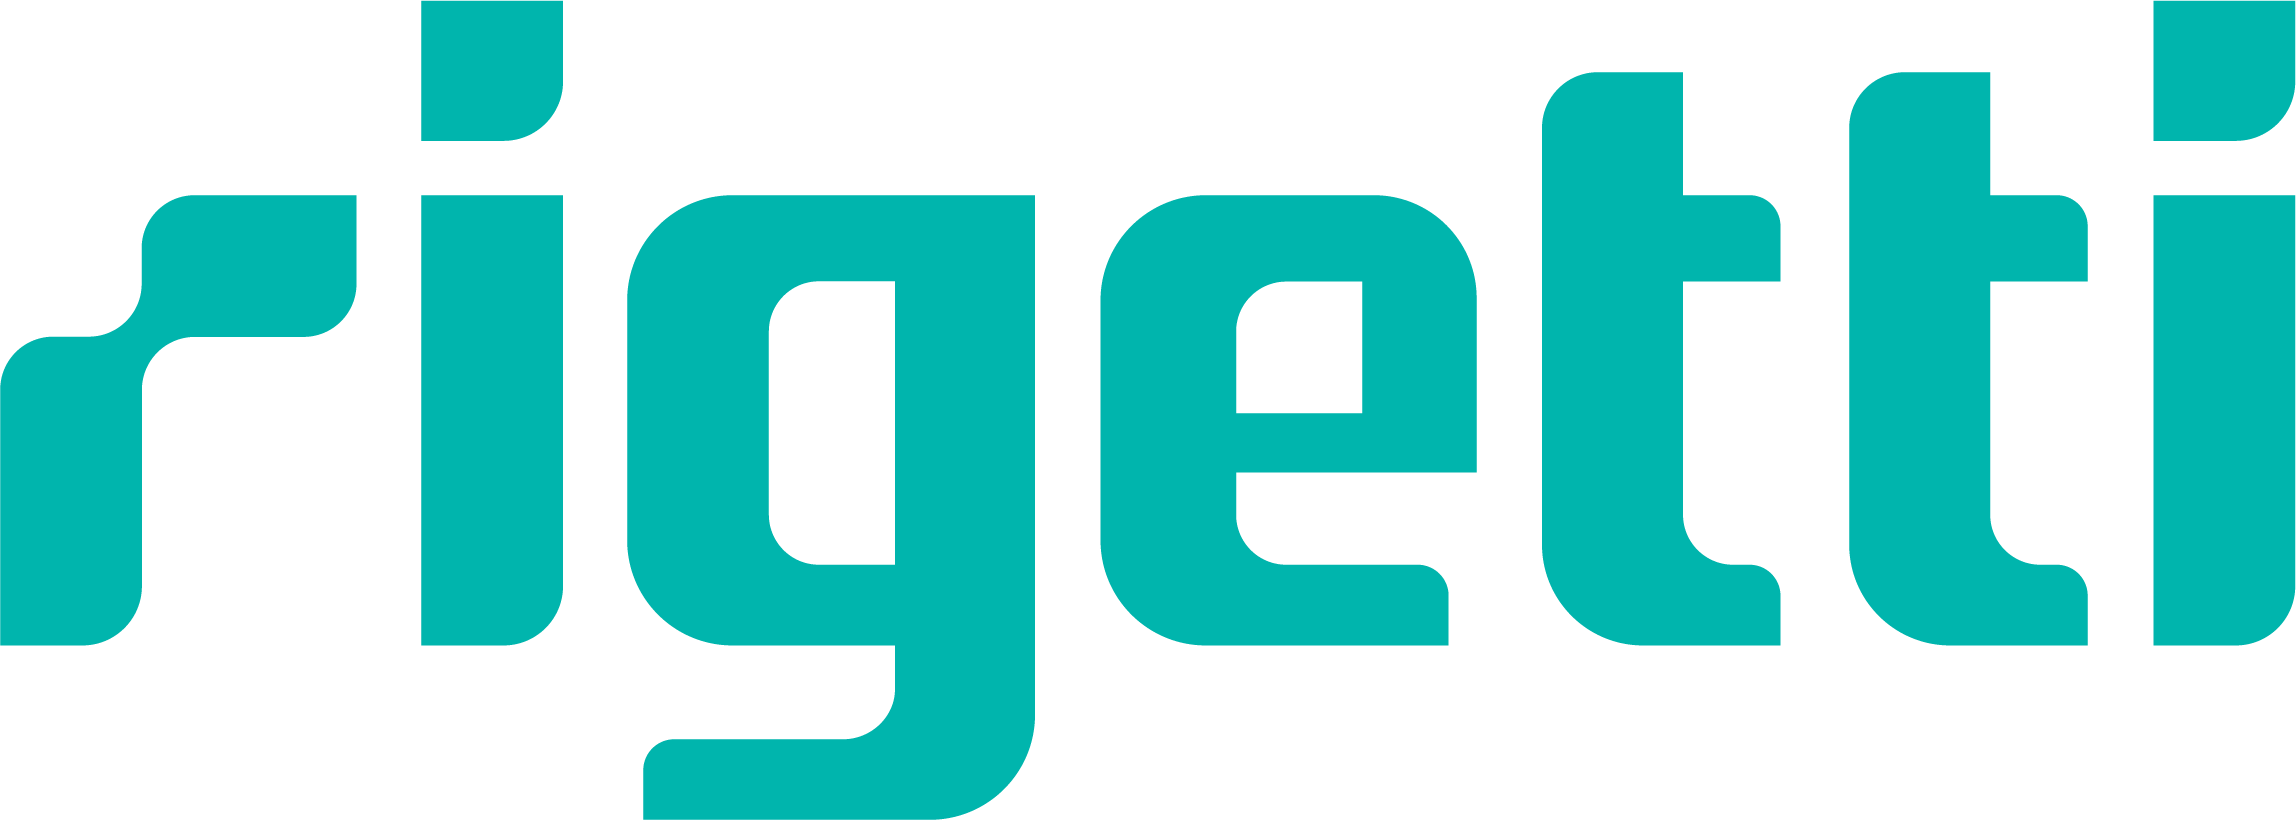 Rigetti logosu